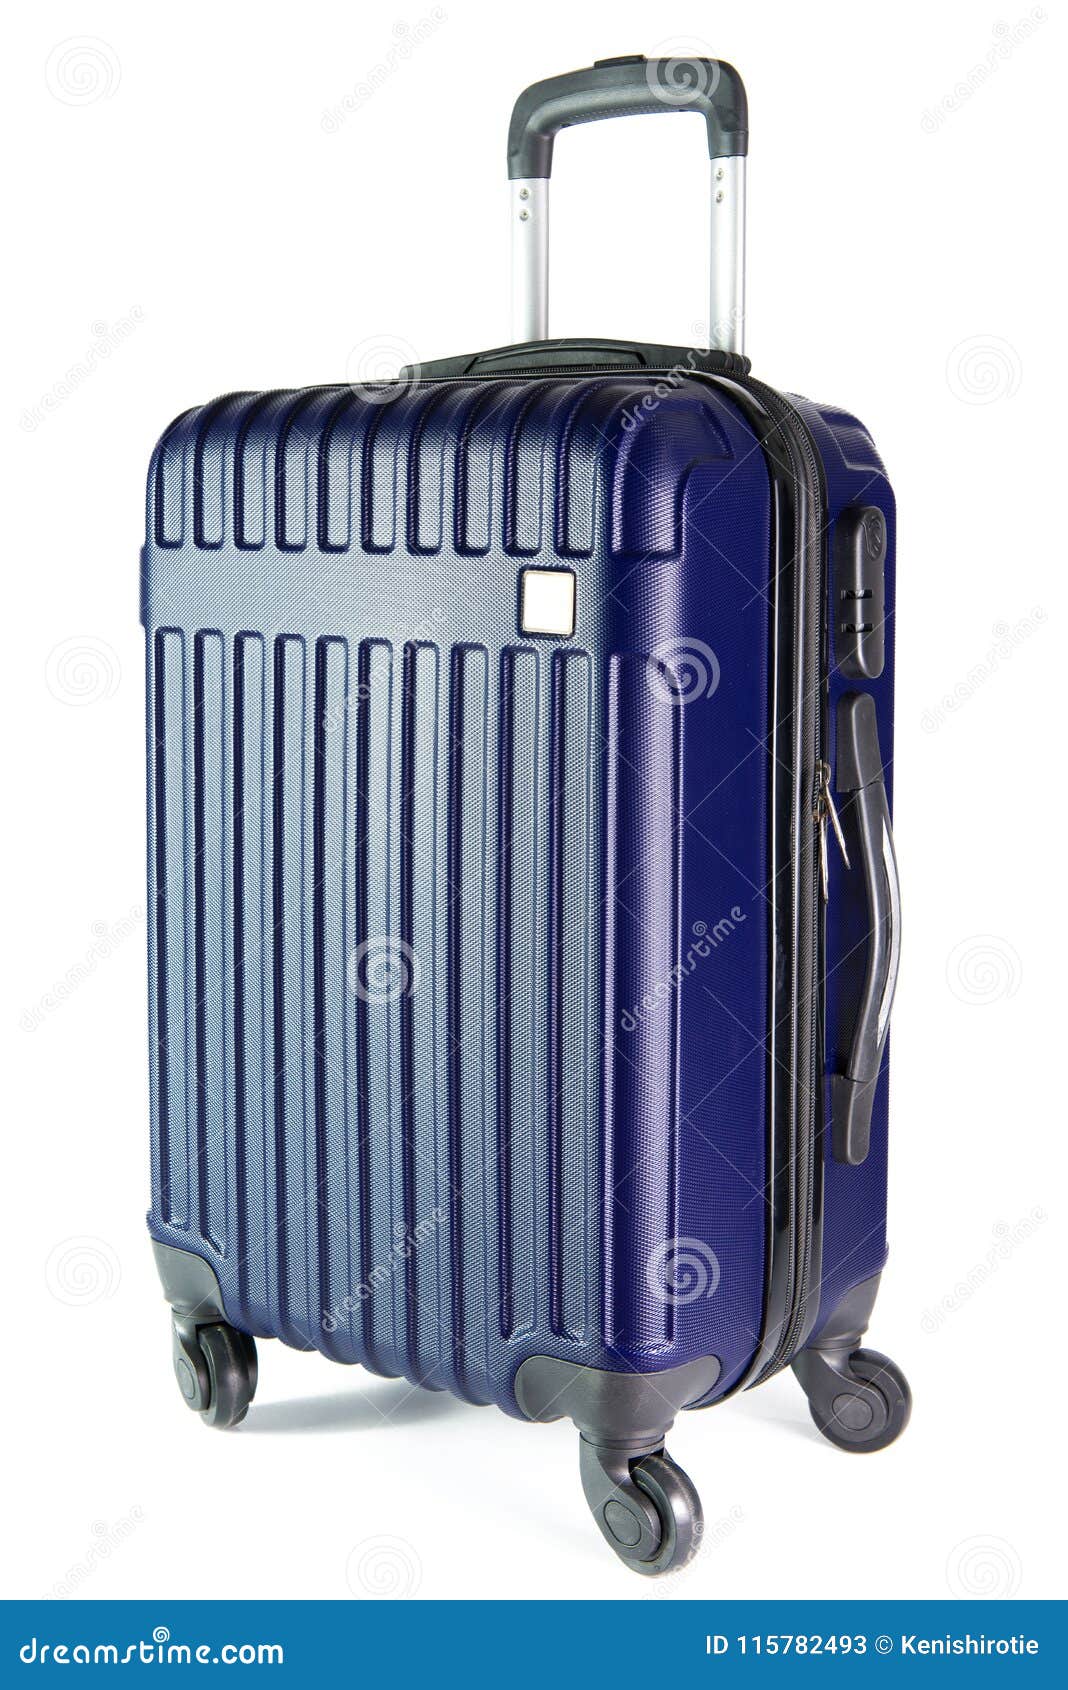 Blue Travel Luggage Isolated on White Background Stock Image - Image of ...